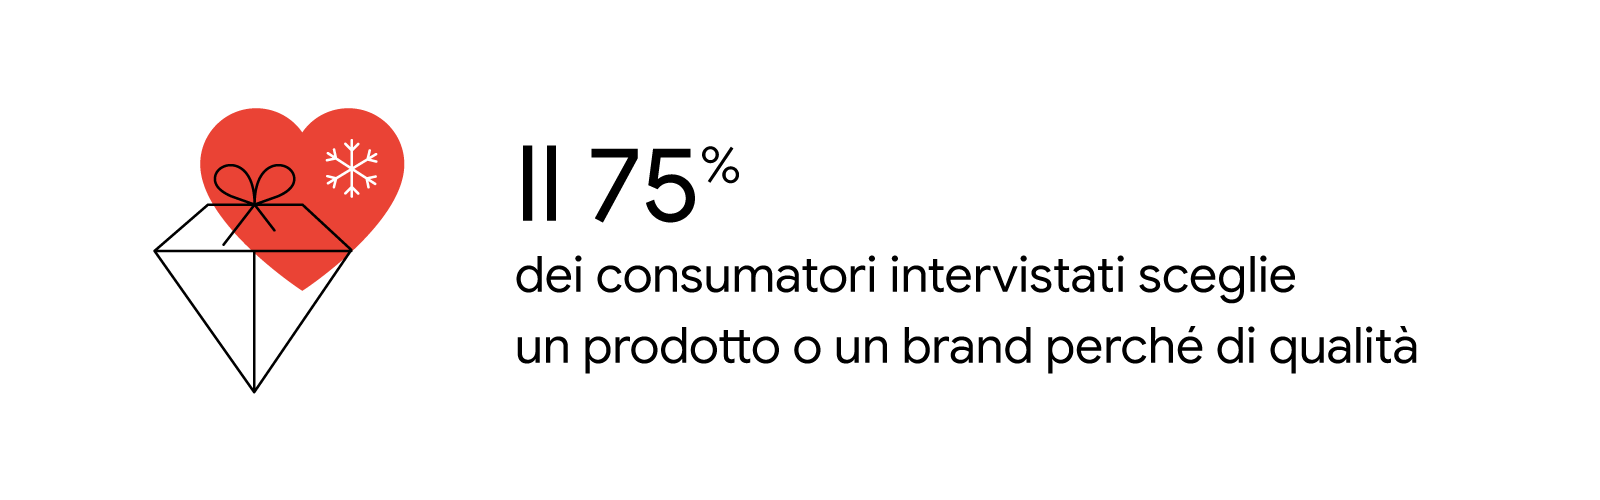 Il 75% dei consumatori intervistati sceglie un prodotto o un brand perché di qualità